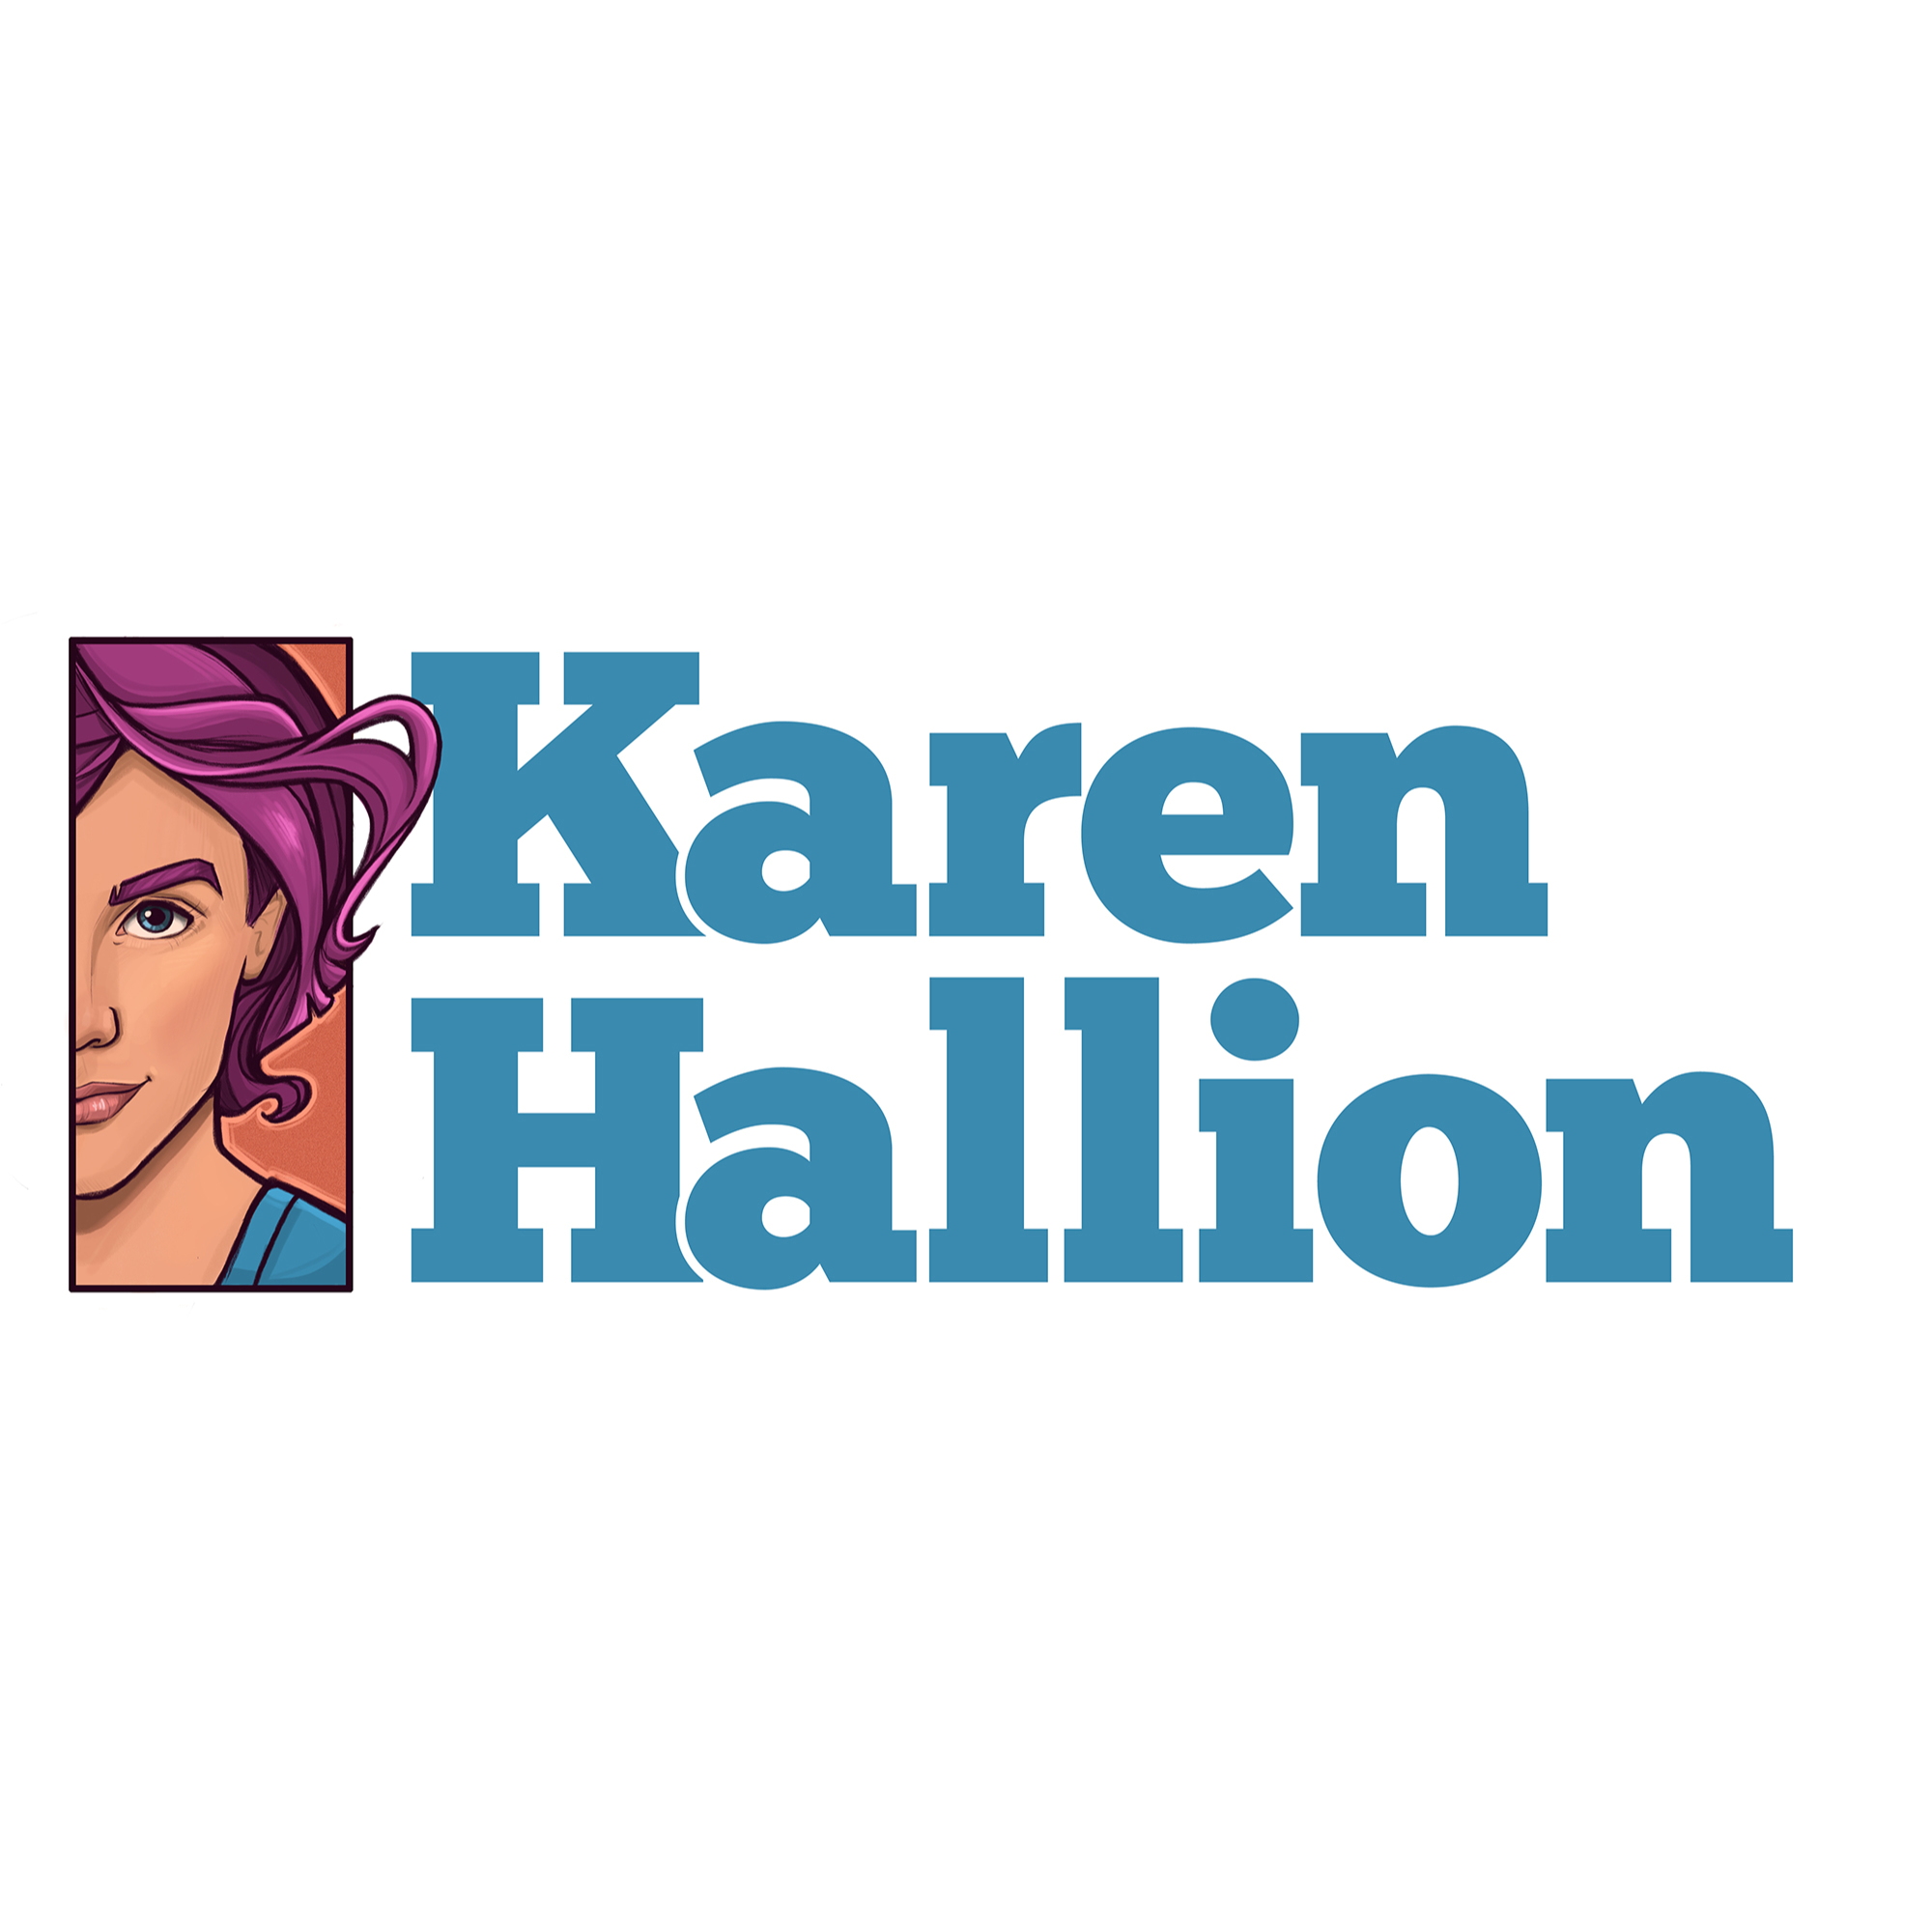 Karen Hallion